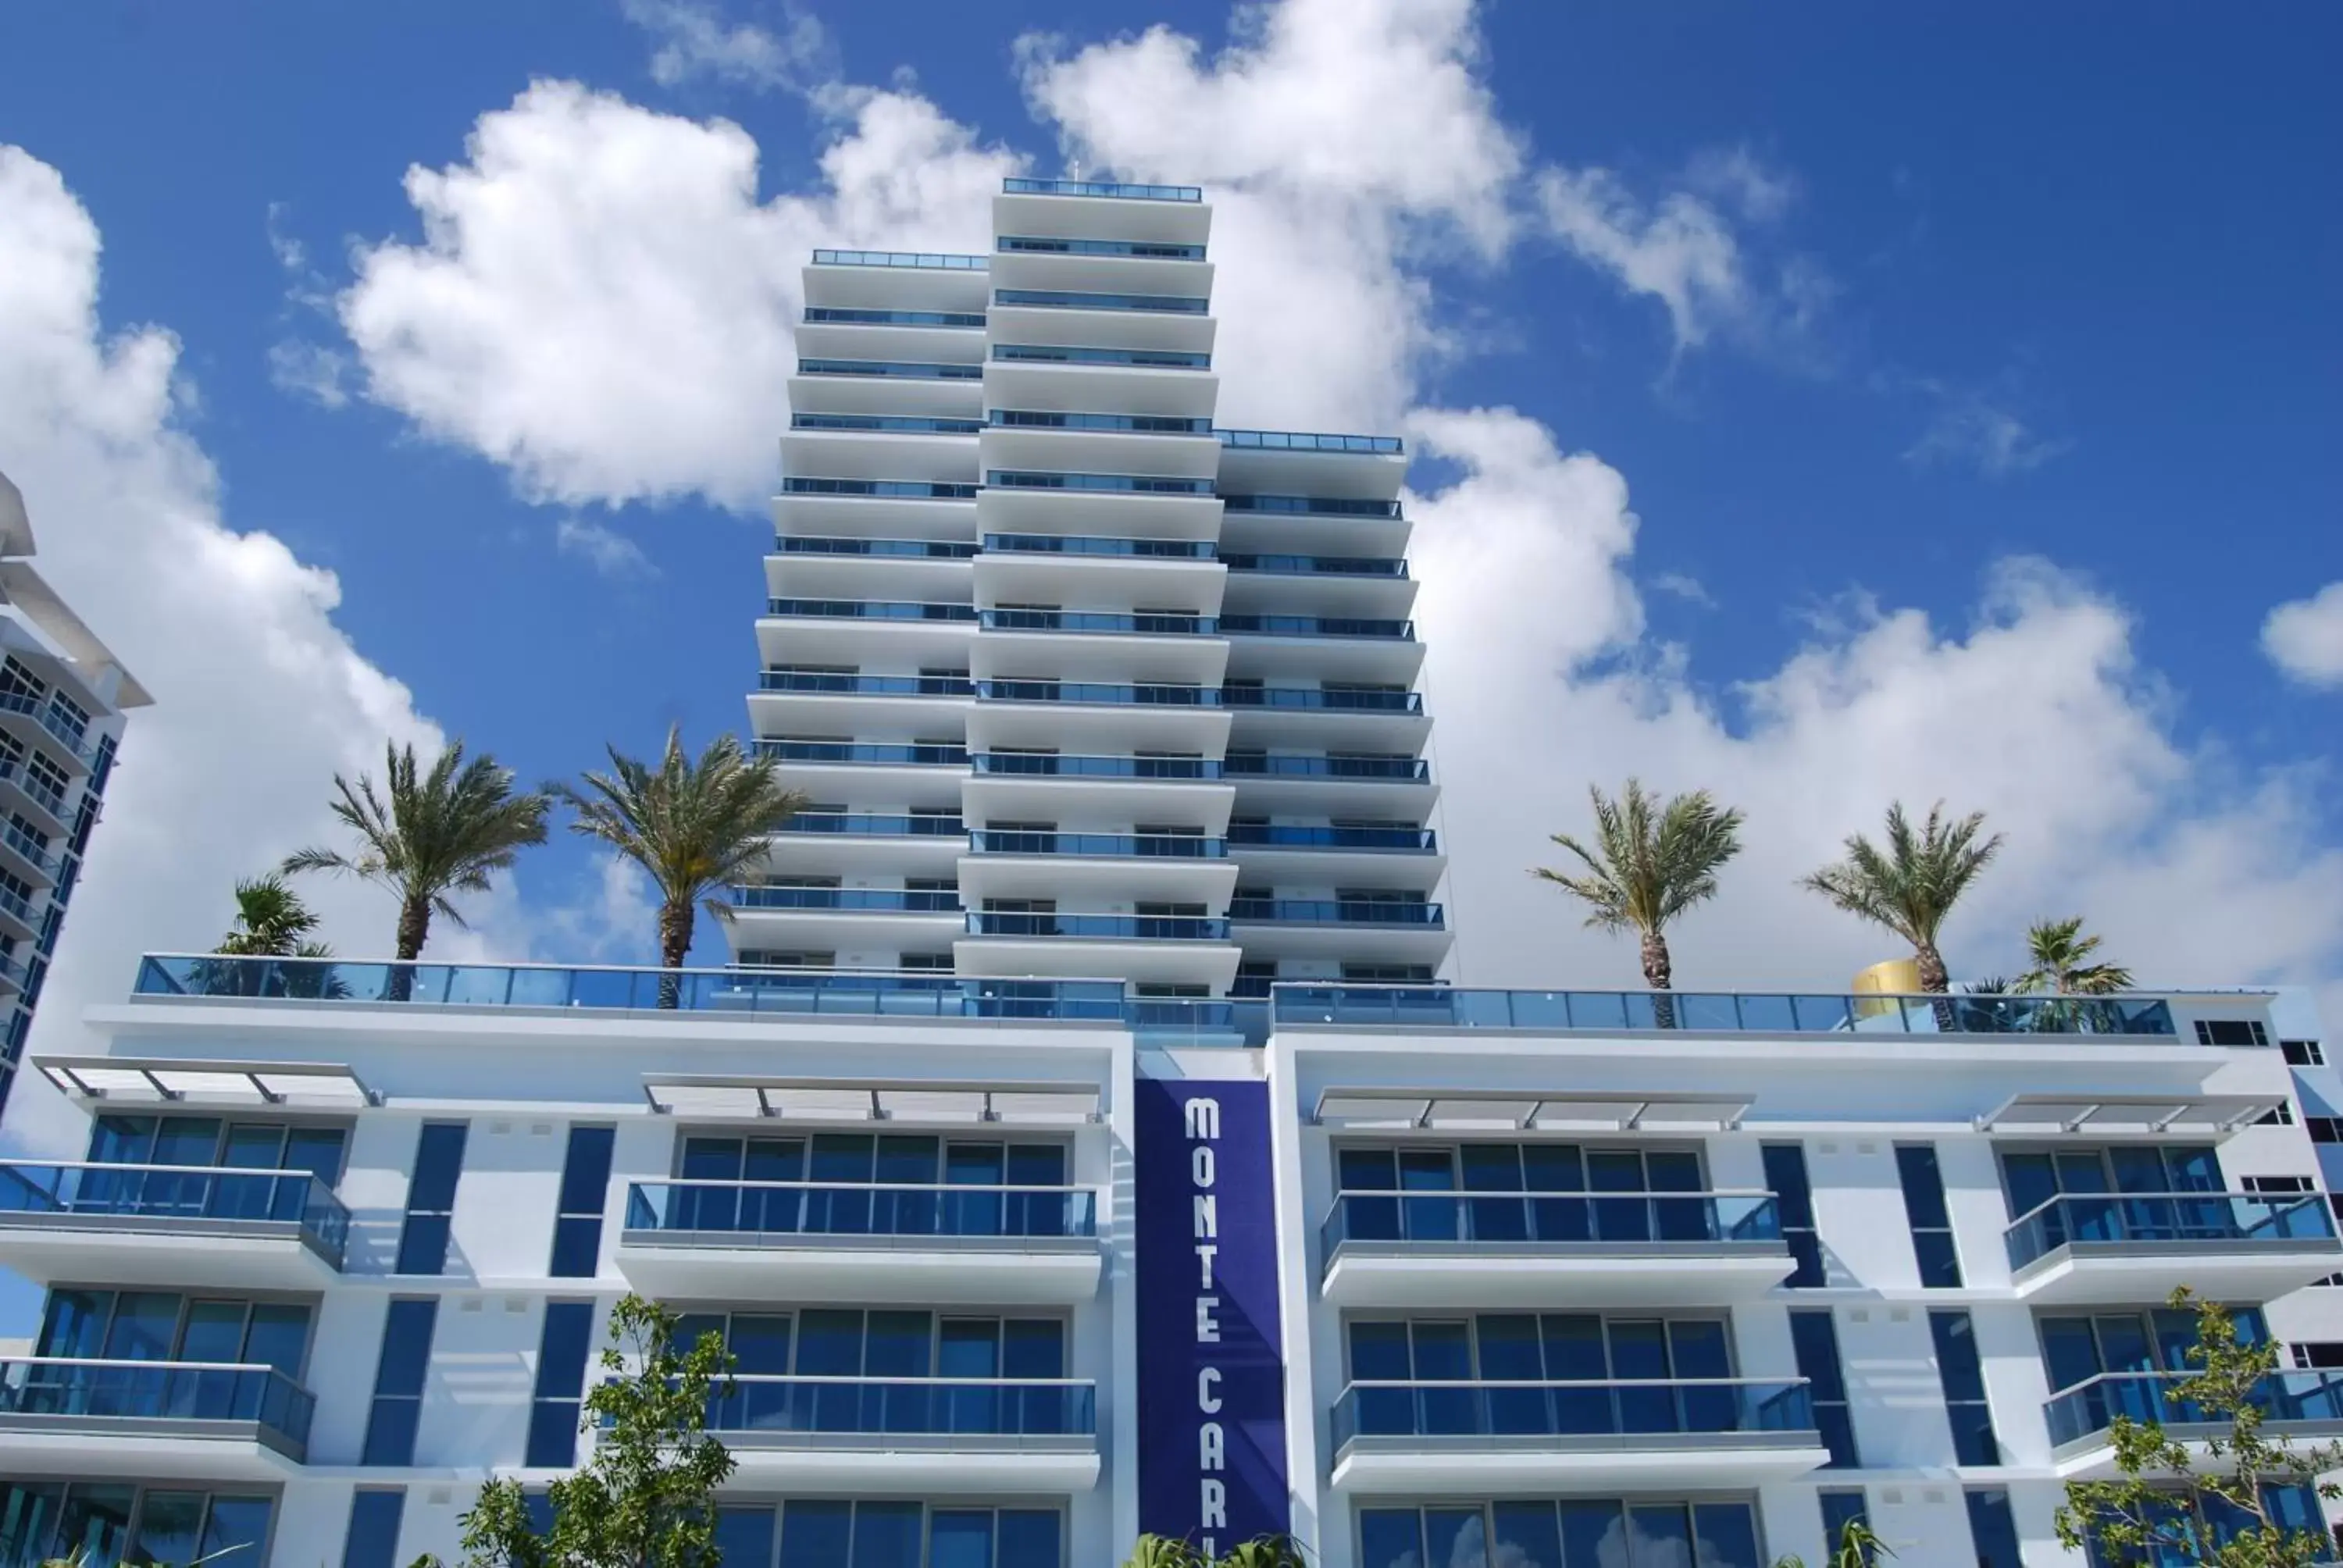 Facade/entrance, Property Building in Monte Carlo by Miami Vacations